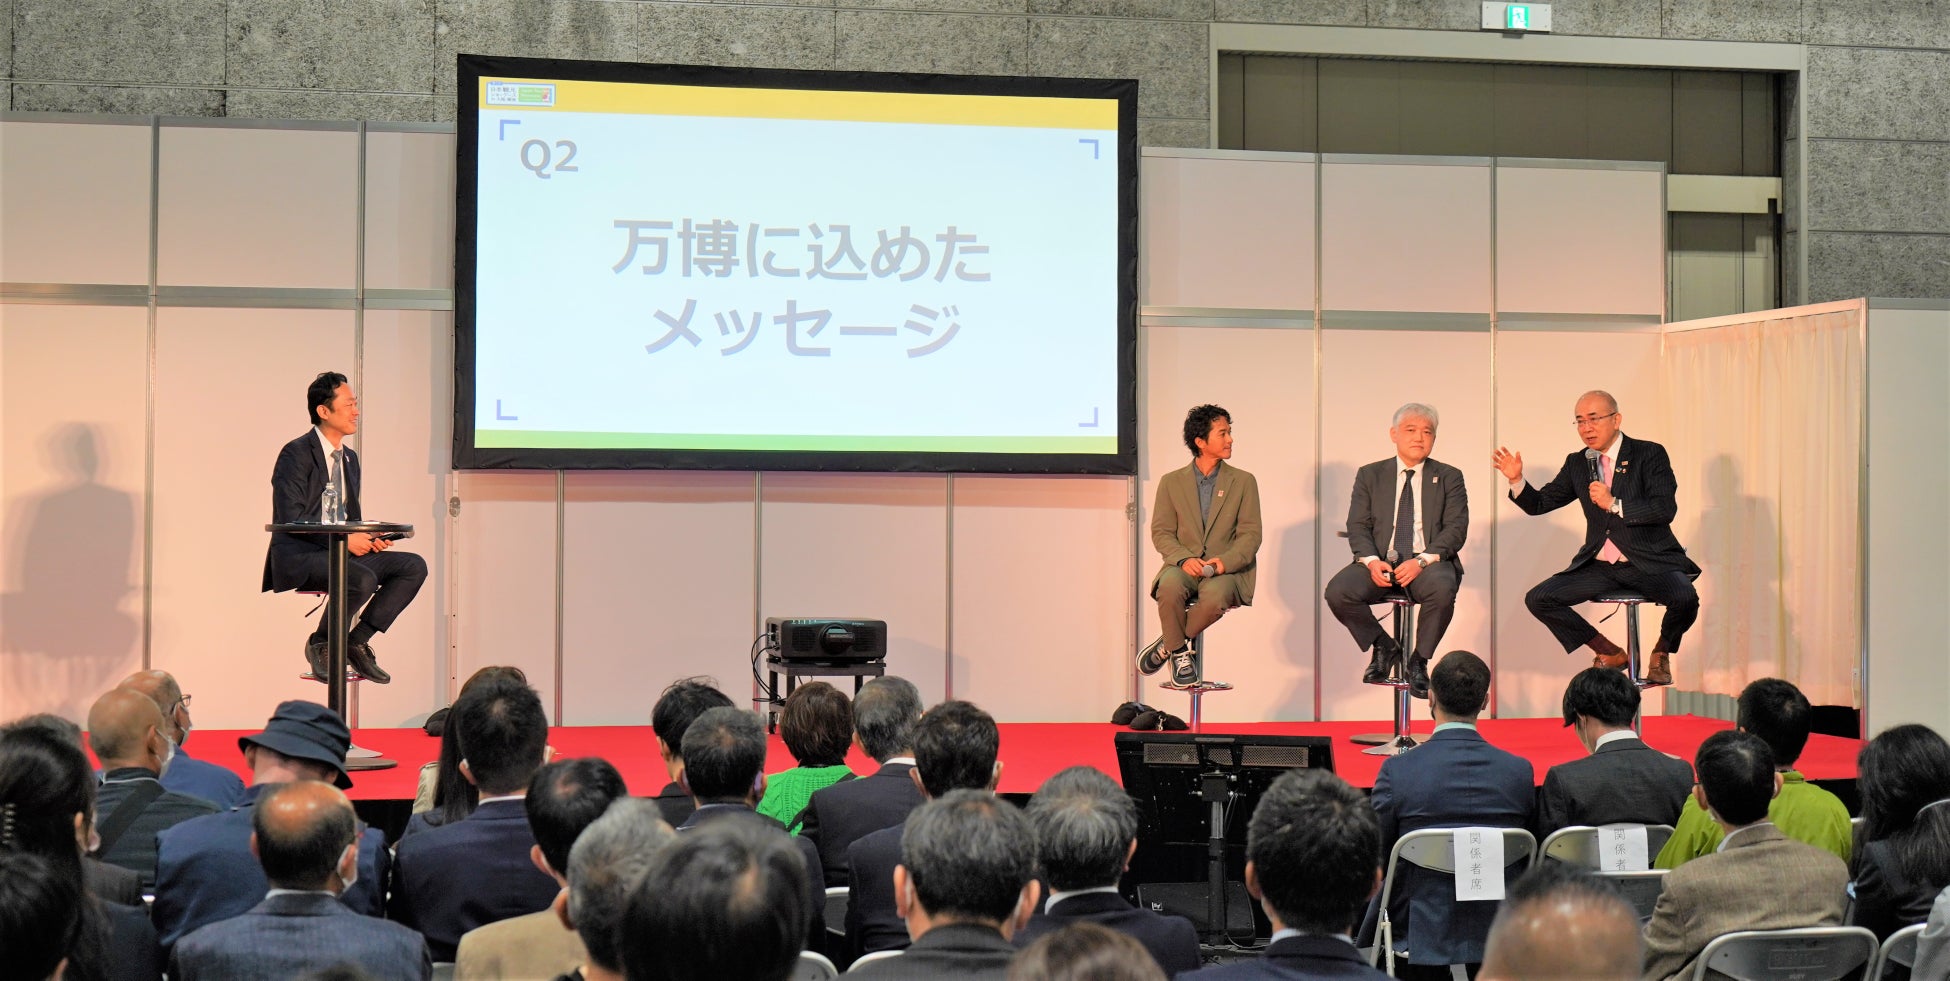 「２０２５年大阪・関西万博に関するトークセッション」の様子